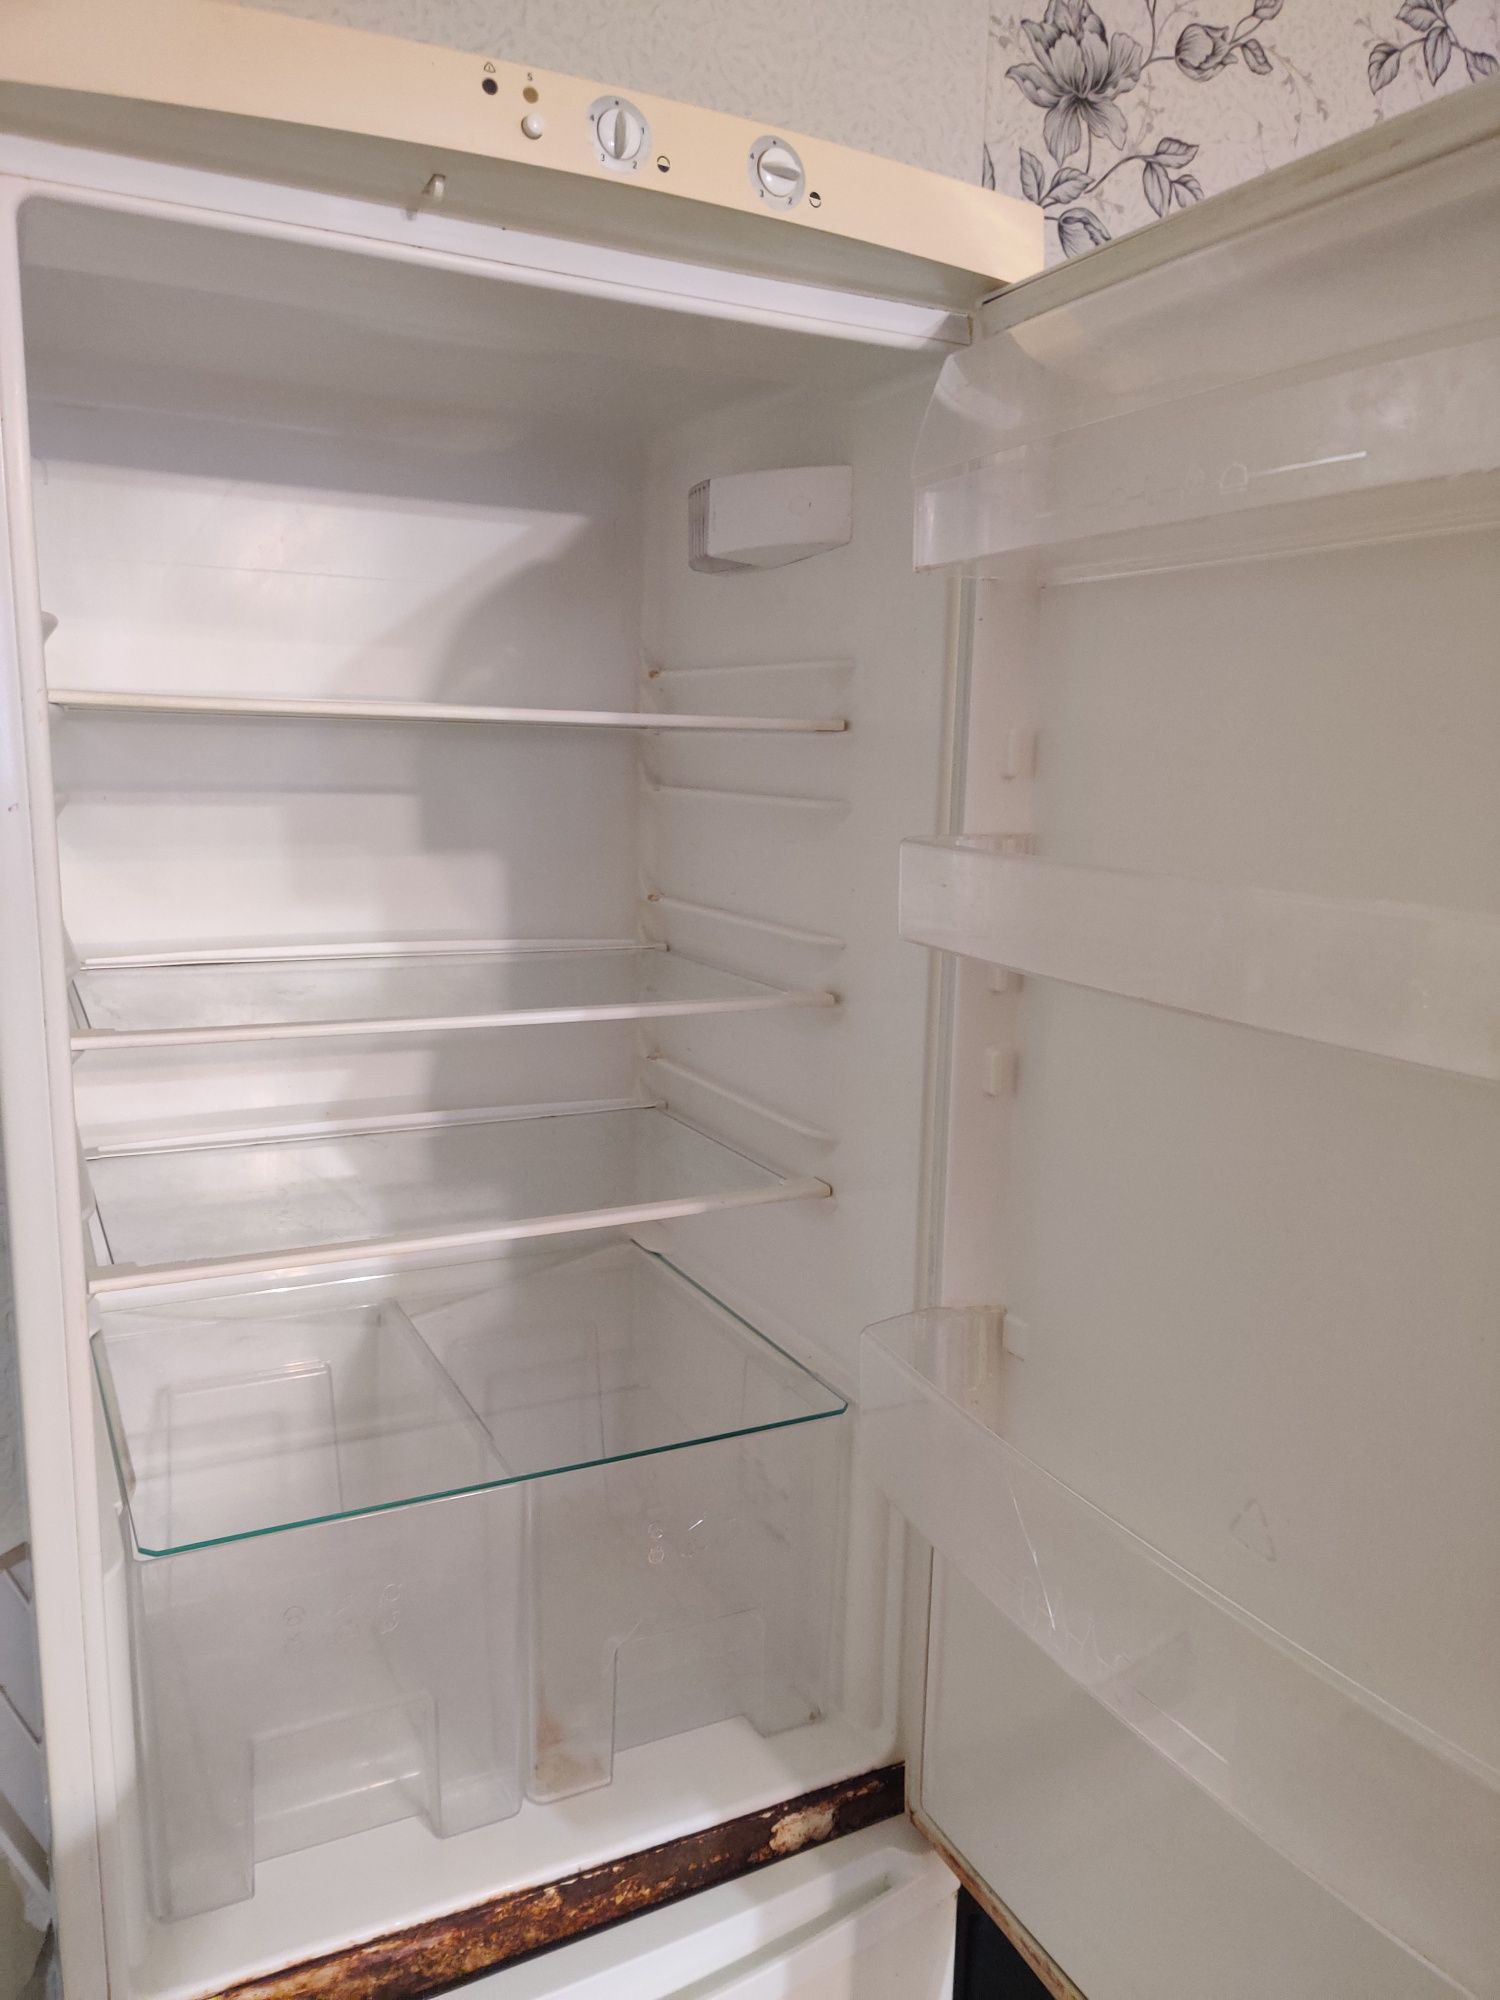 Срочно продам б/у Холодильник Zanussi ZBR 26 ND